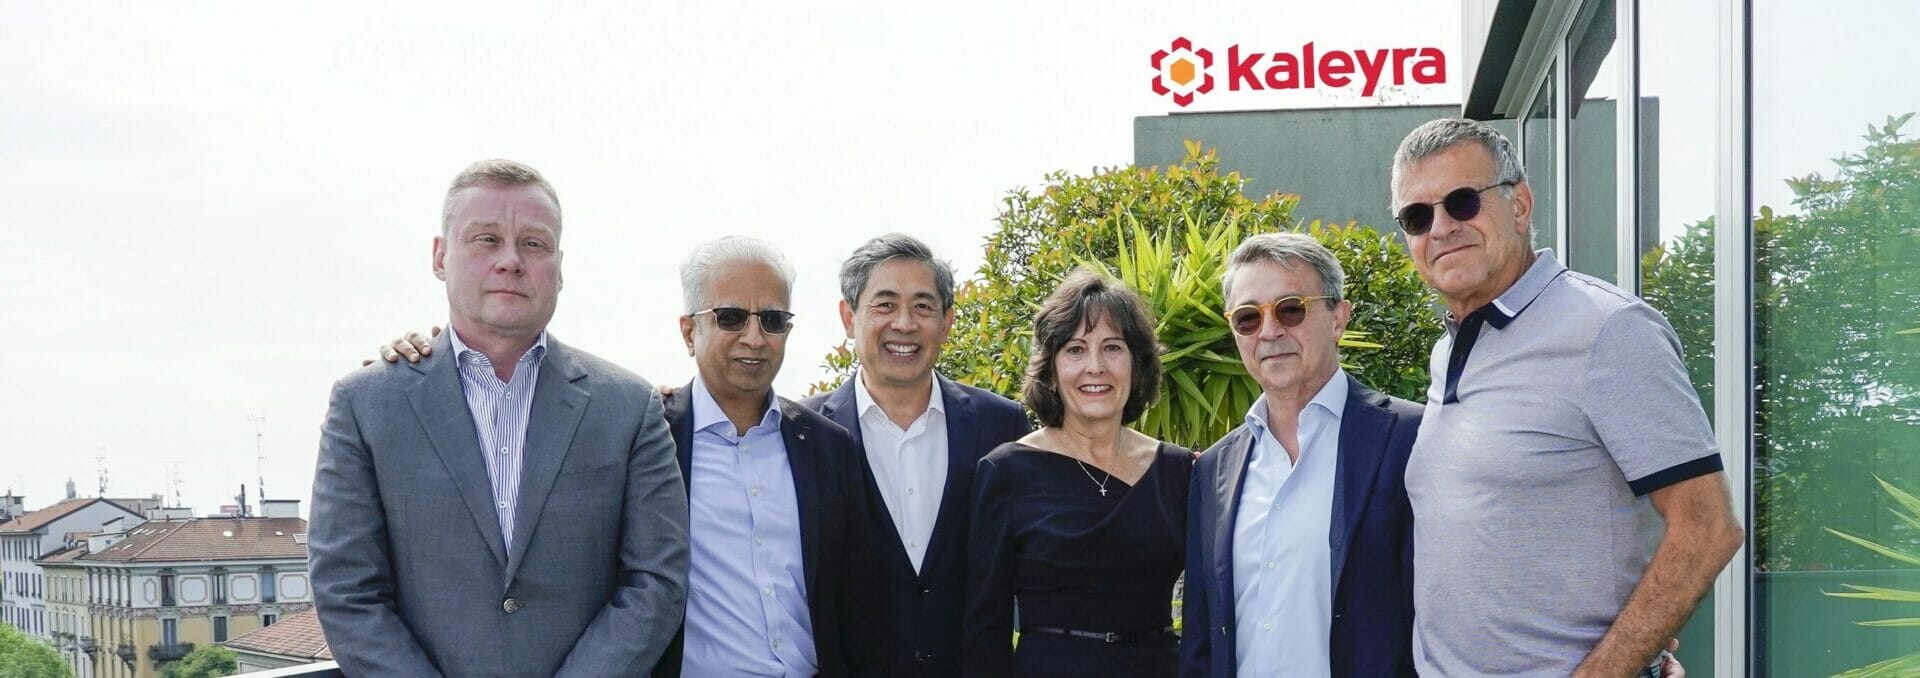 Tata Communications adquirirá Kaleyra, líder a nivel mundial en plataformas CPaaS, mediante transacciones completamente en efectivo